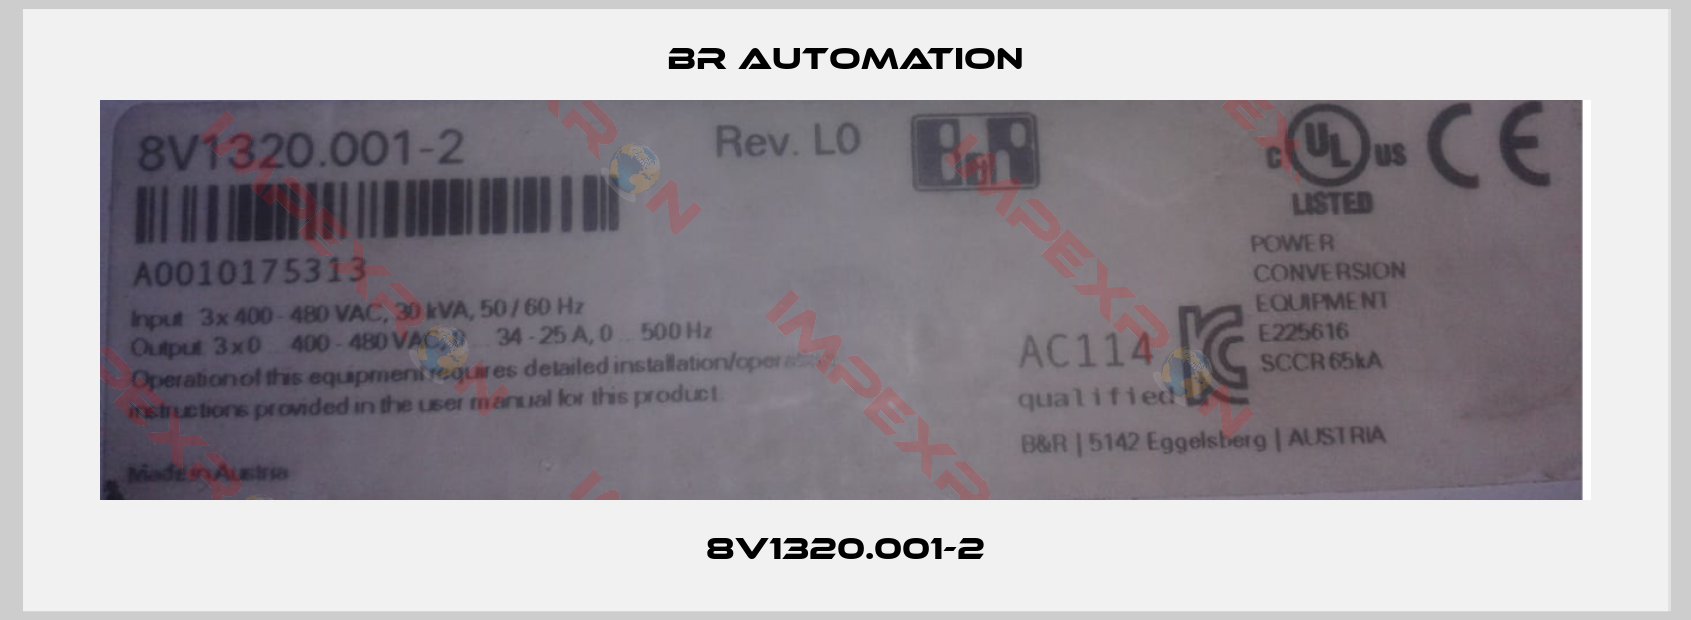 Br Automation-8V1320.001-2